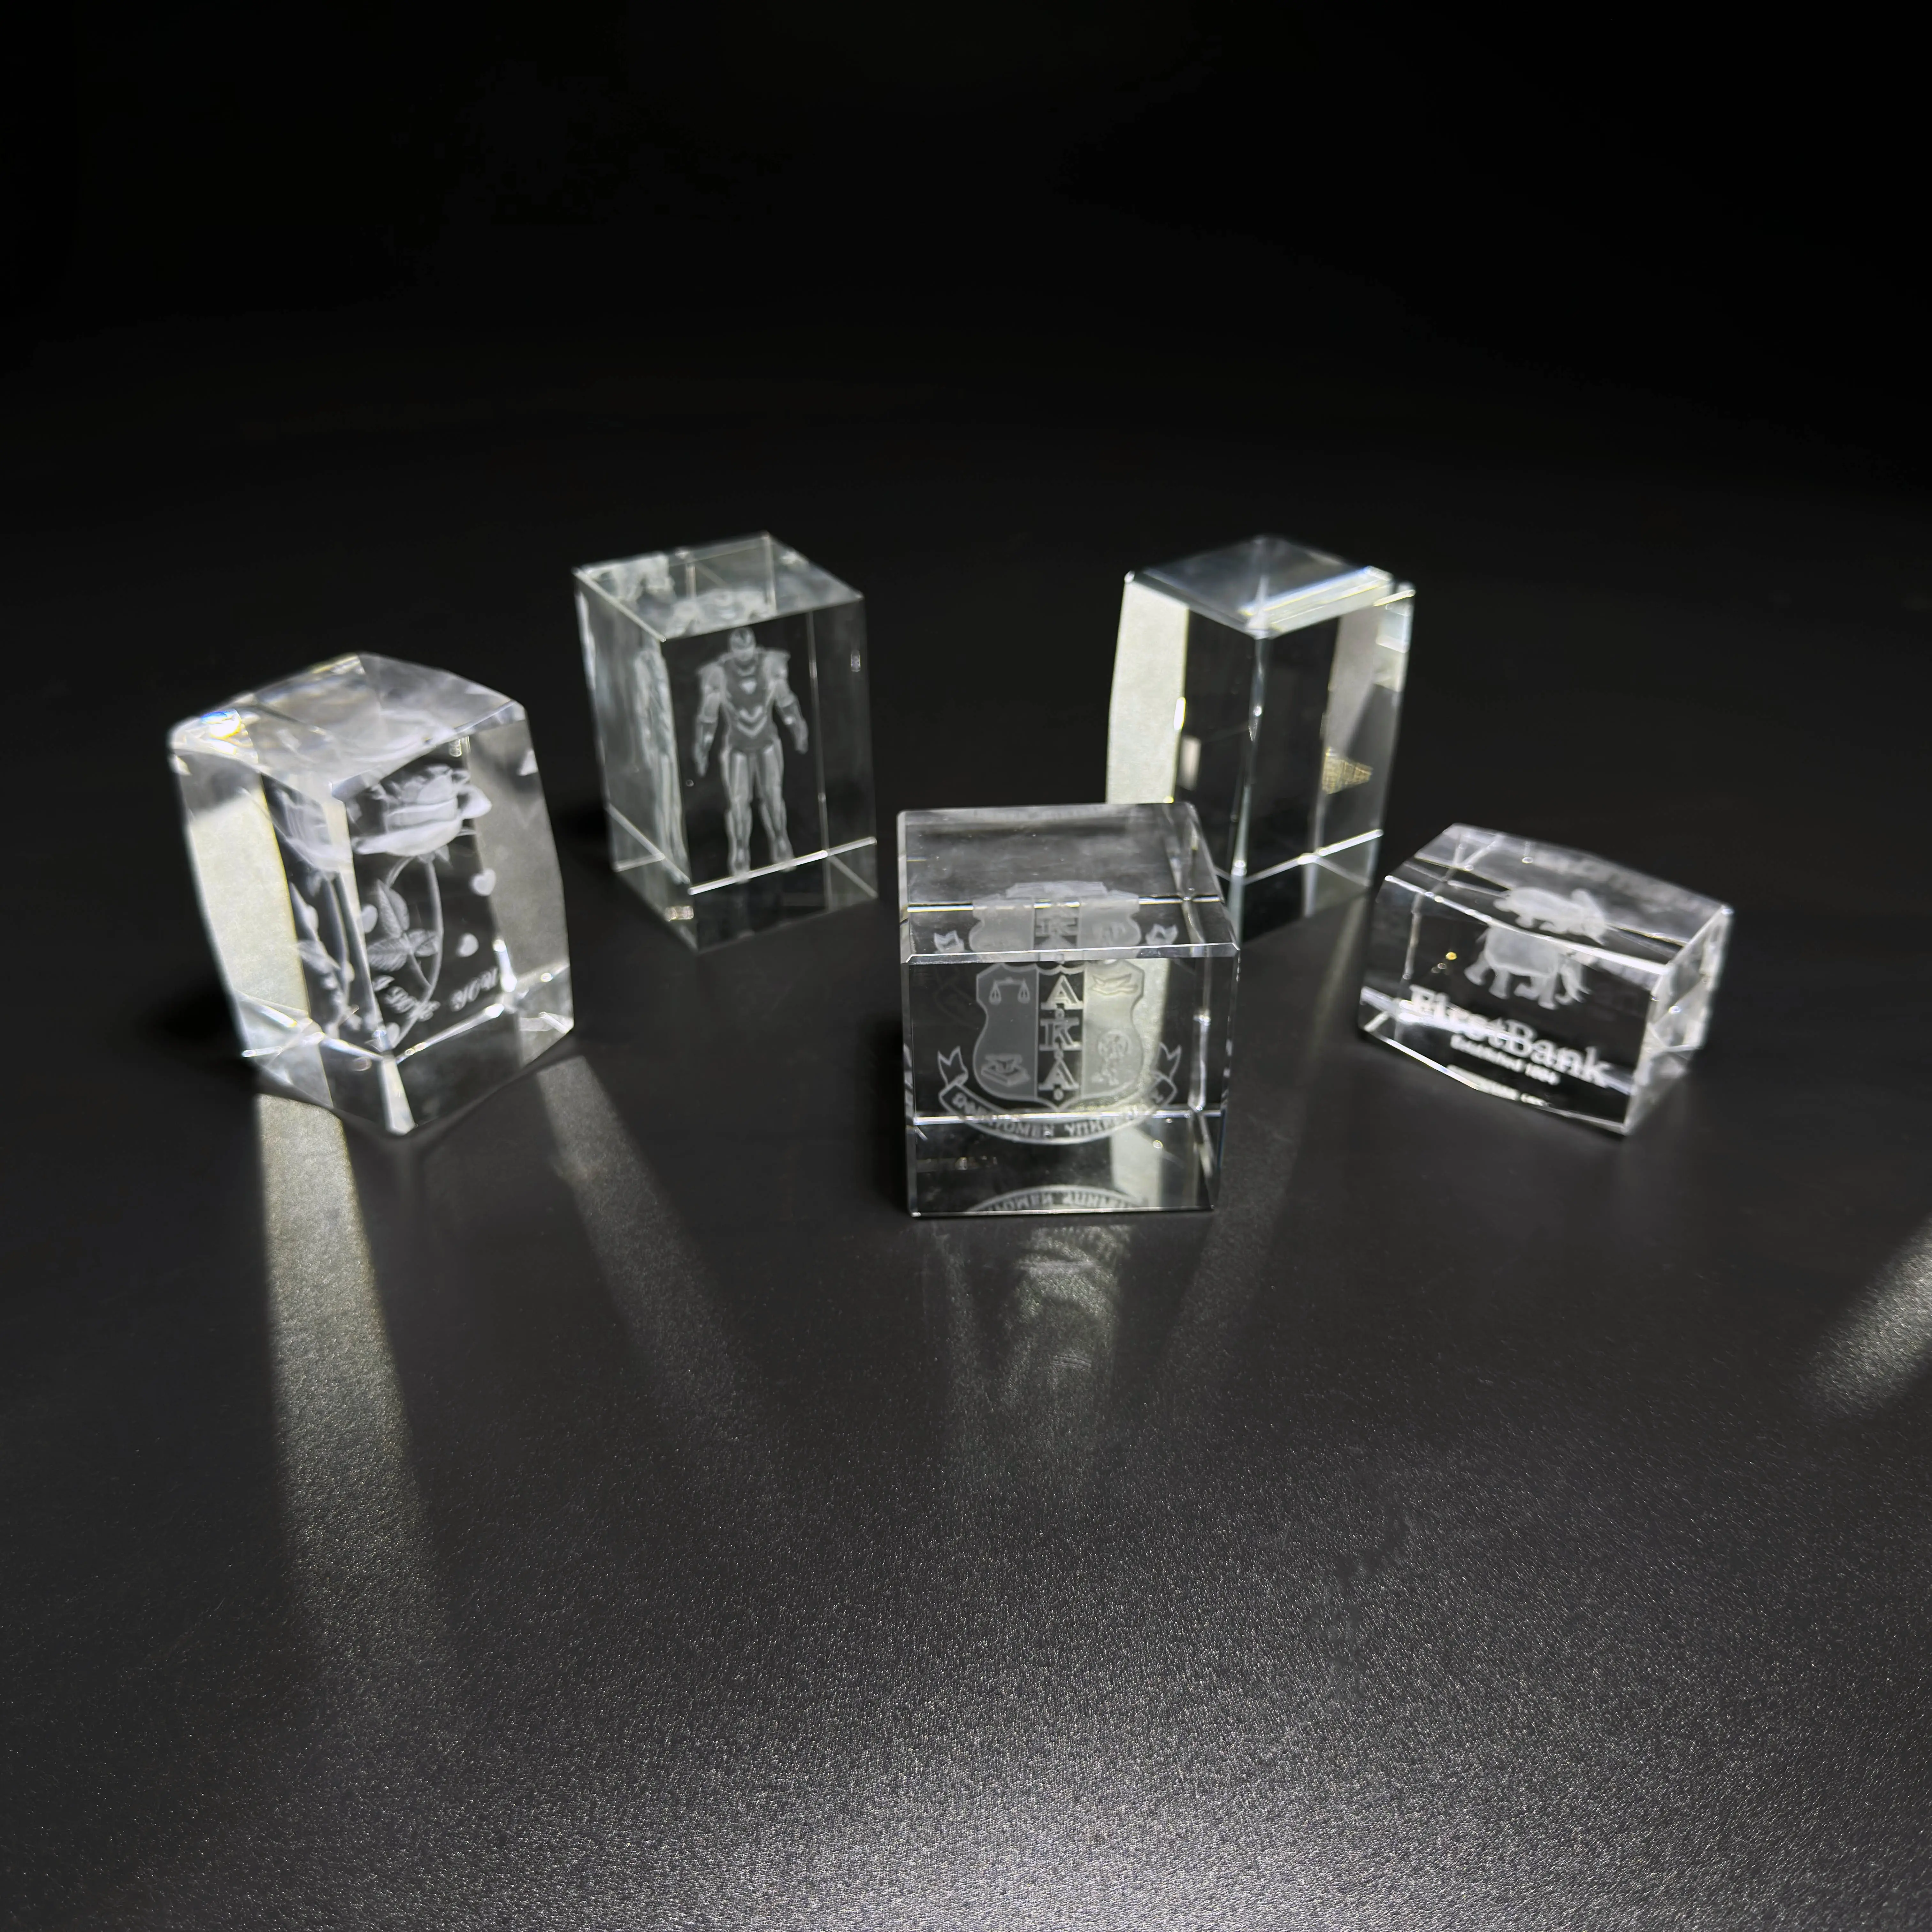 All'ingrosso stampa di gesus 3d In cristallo cubo di vetro per i regali di nozze di compleanno religioso